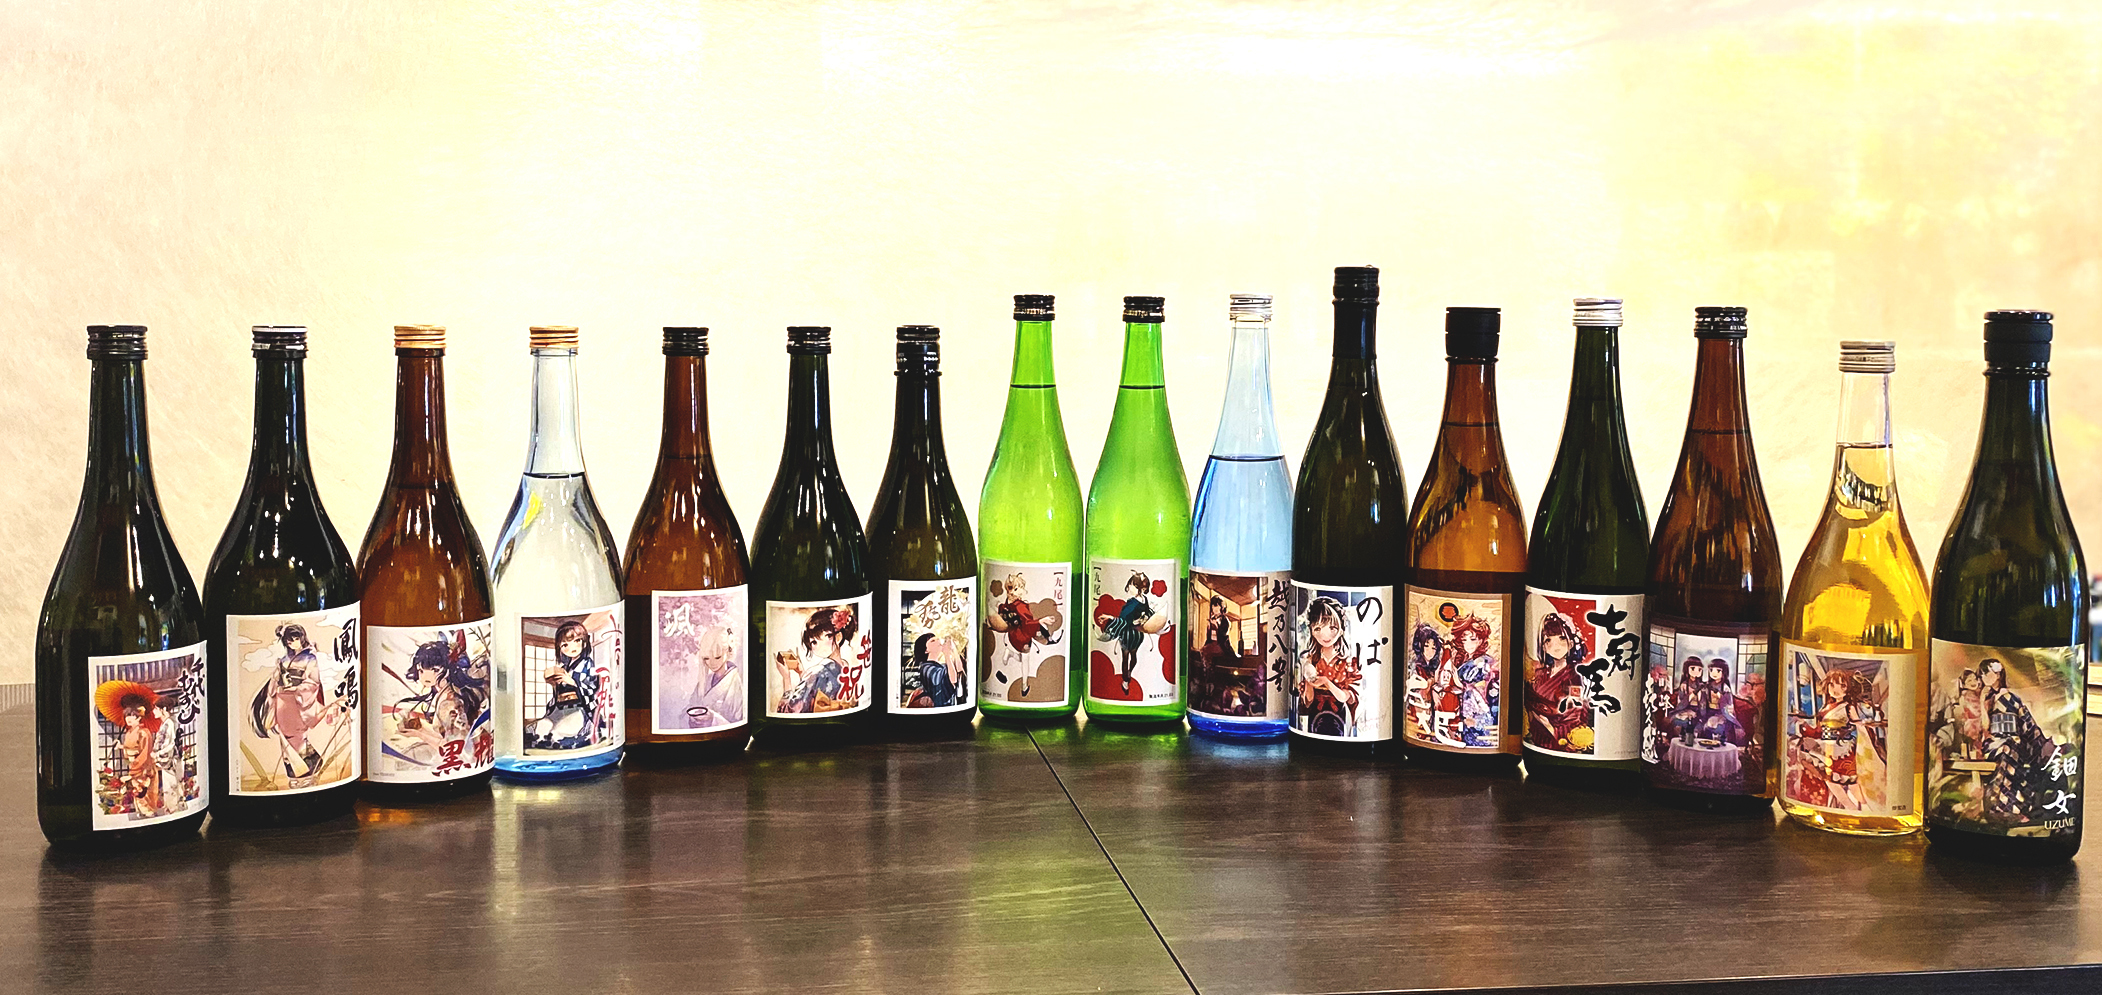 人気イラストレーター 日本酒 コラボラベル日本酒を6月10日より限定発売 名酒センター株式会社のプレスリリース